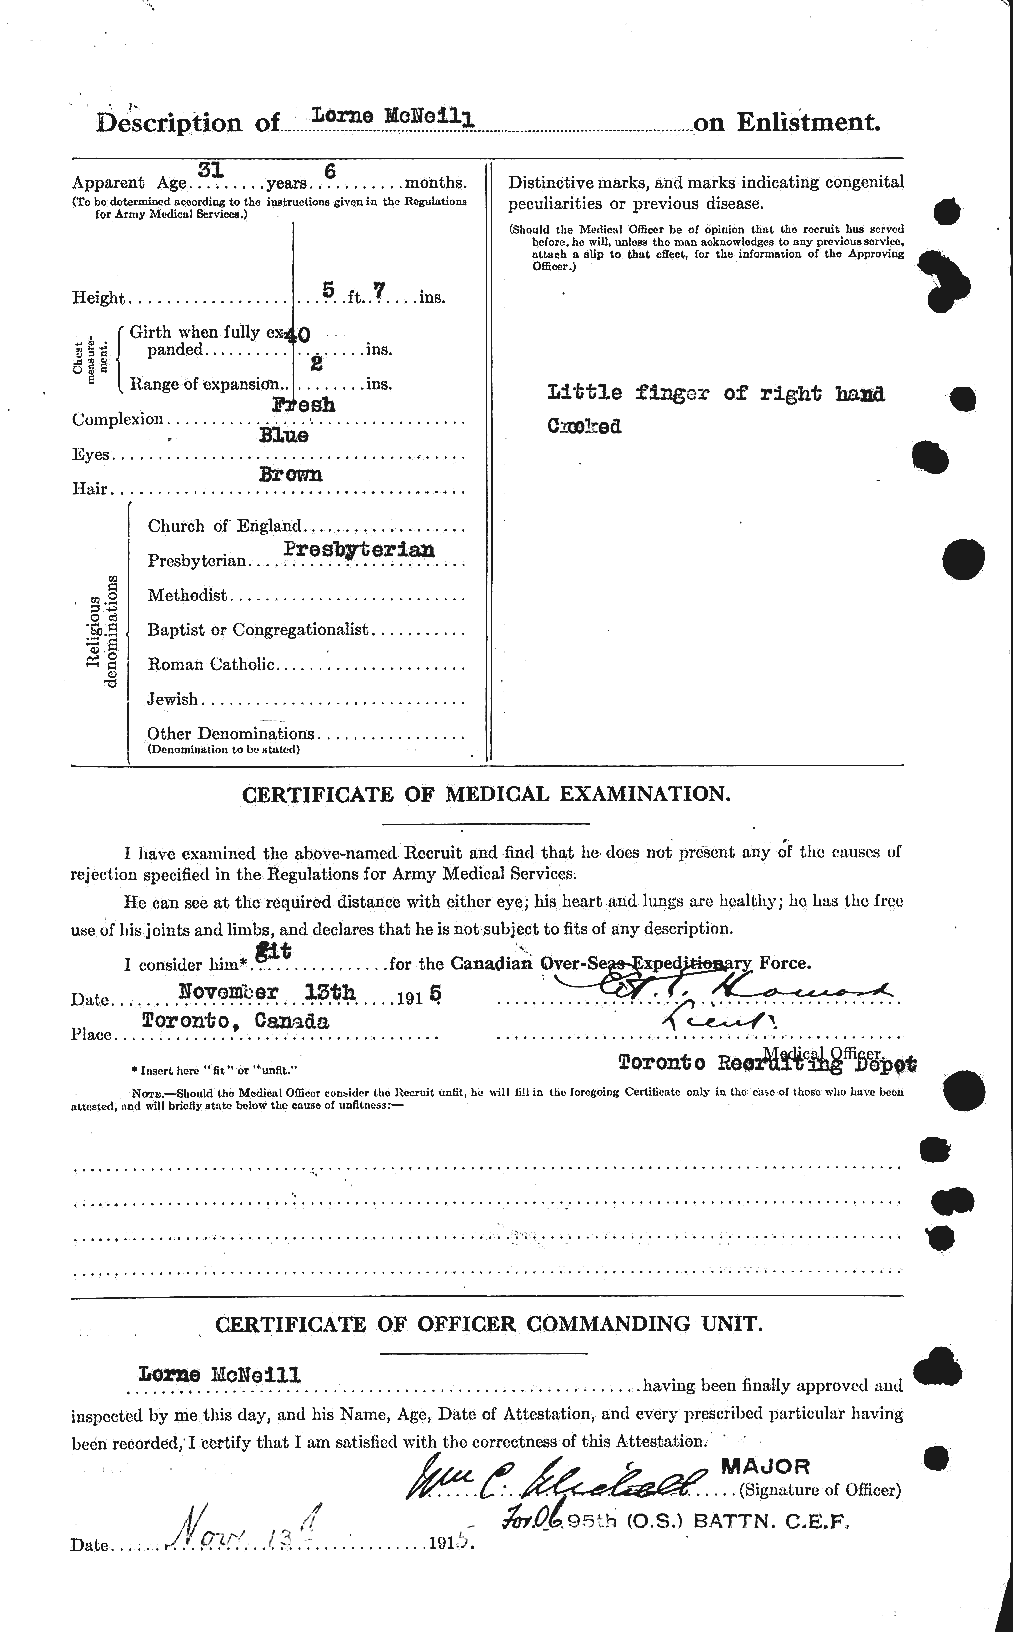 Dossiers du Personnel de la Première Guerre mondiale - CEC 539001b